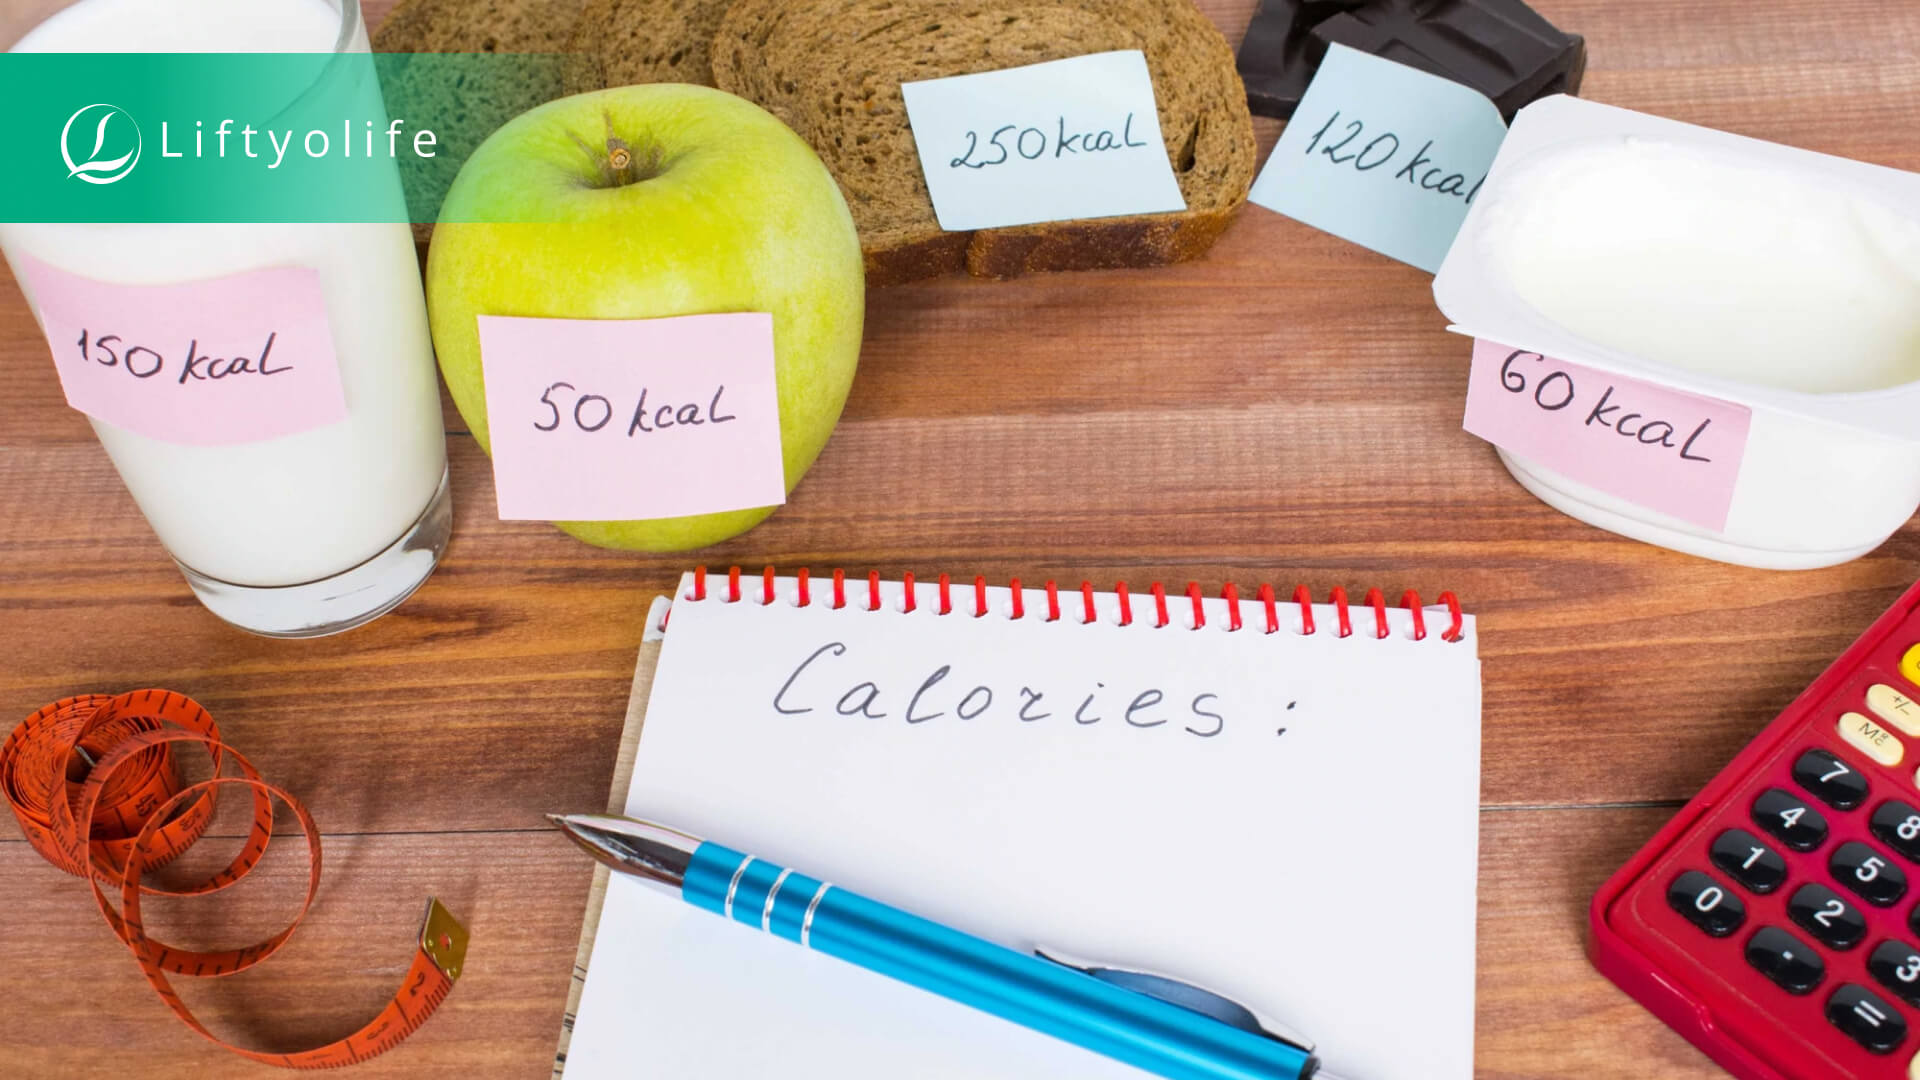 Use a calorie calculator